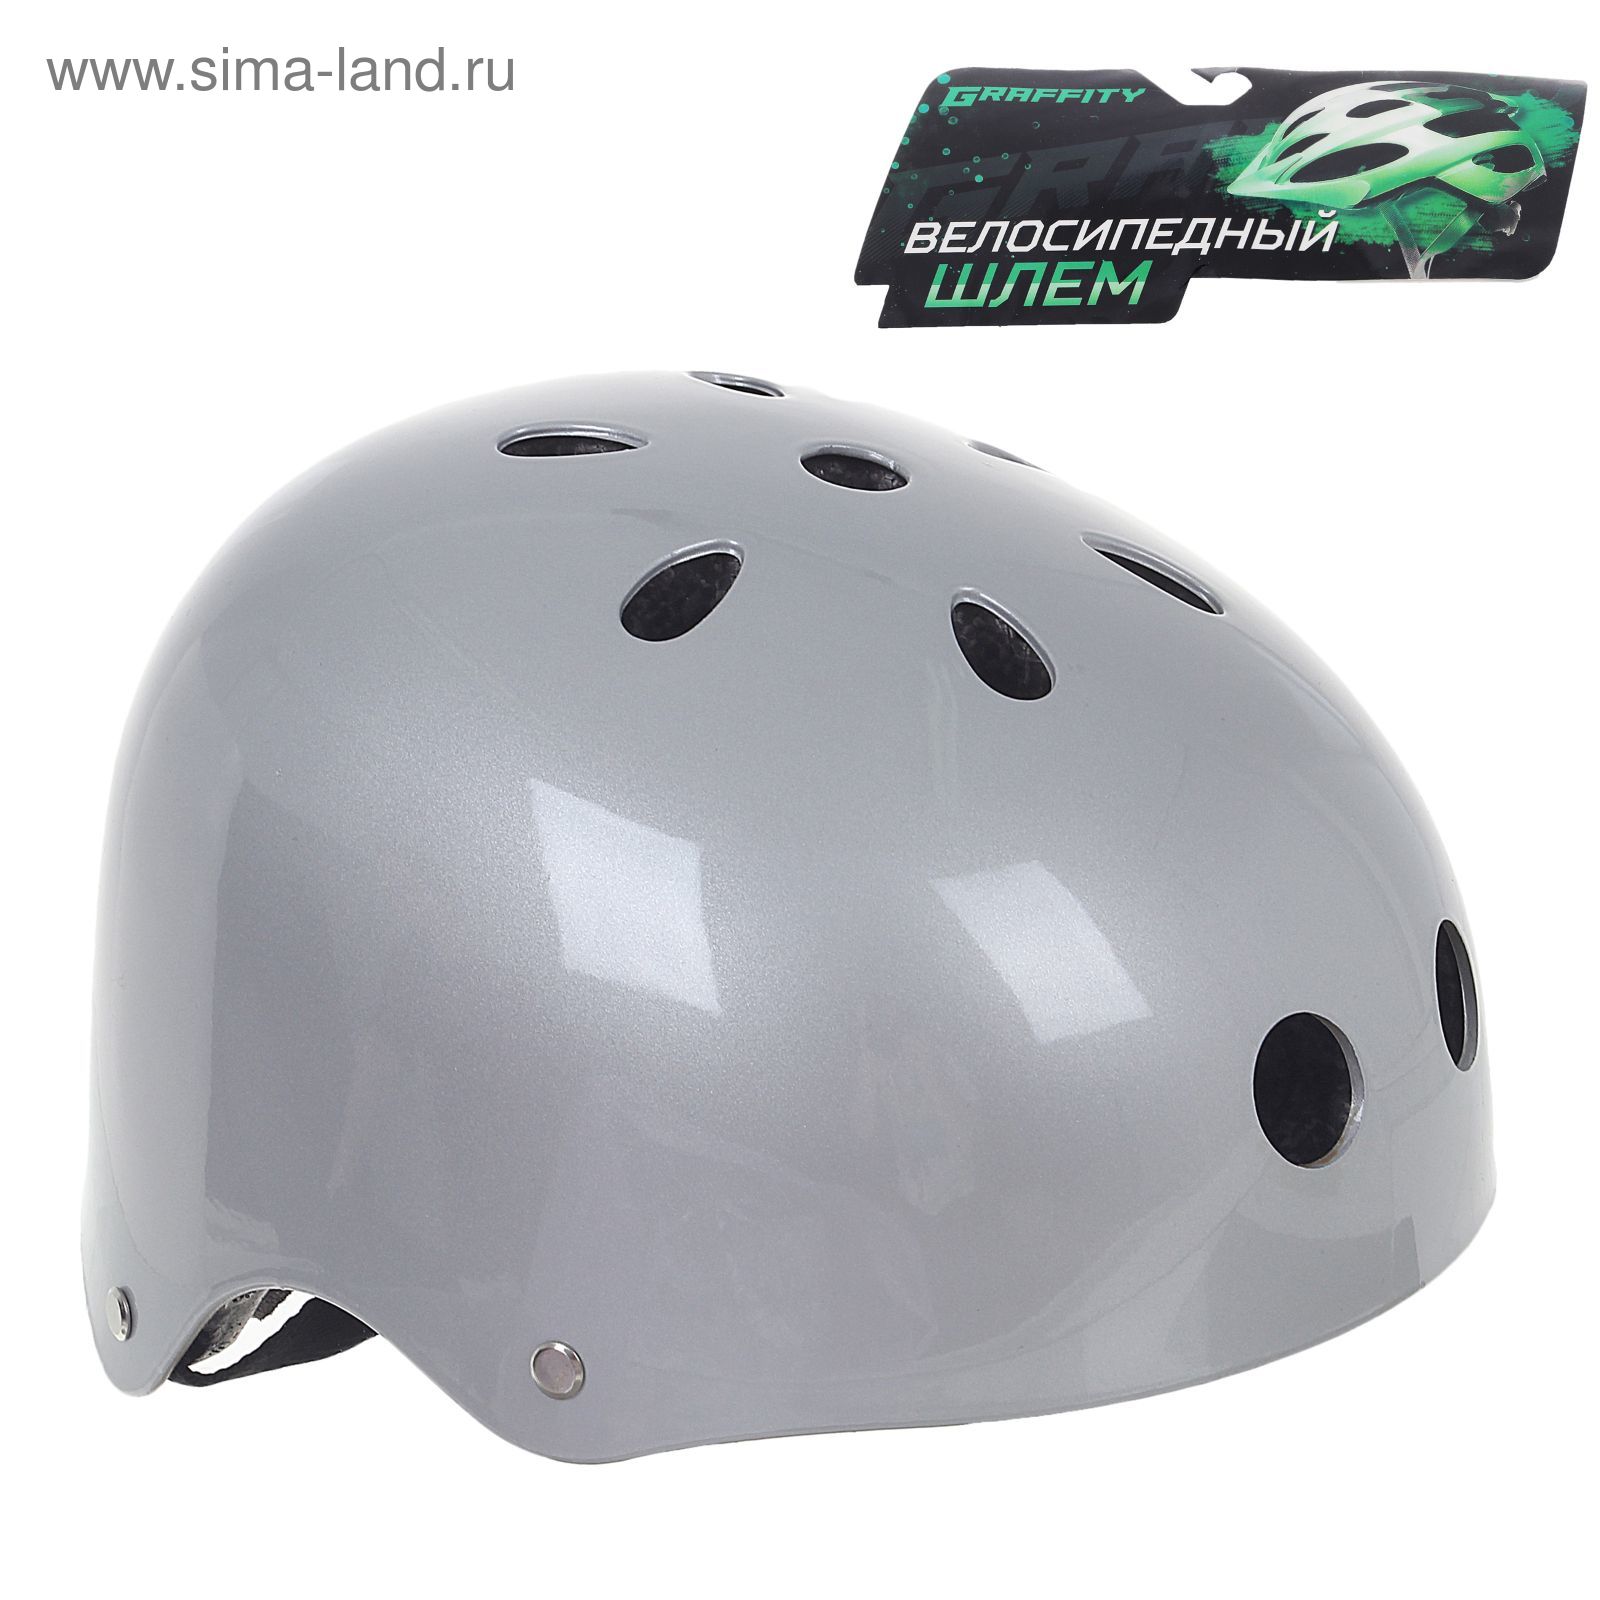 Шлем велосипедиста взрослый ОТ-GK1, глянцевый, серебро d=56 см